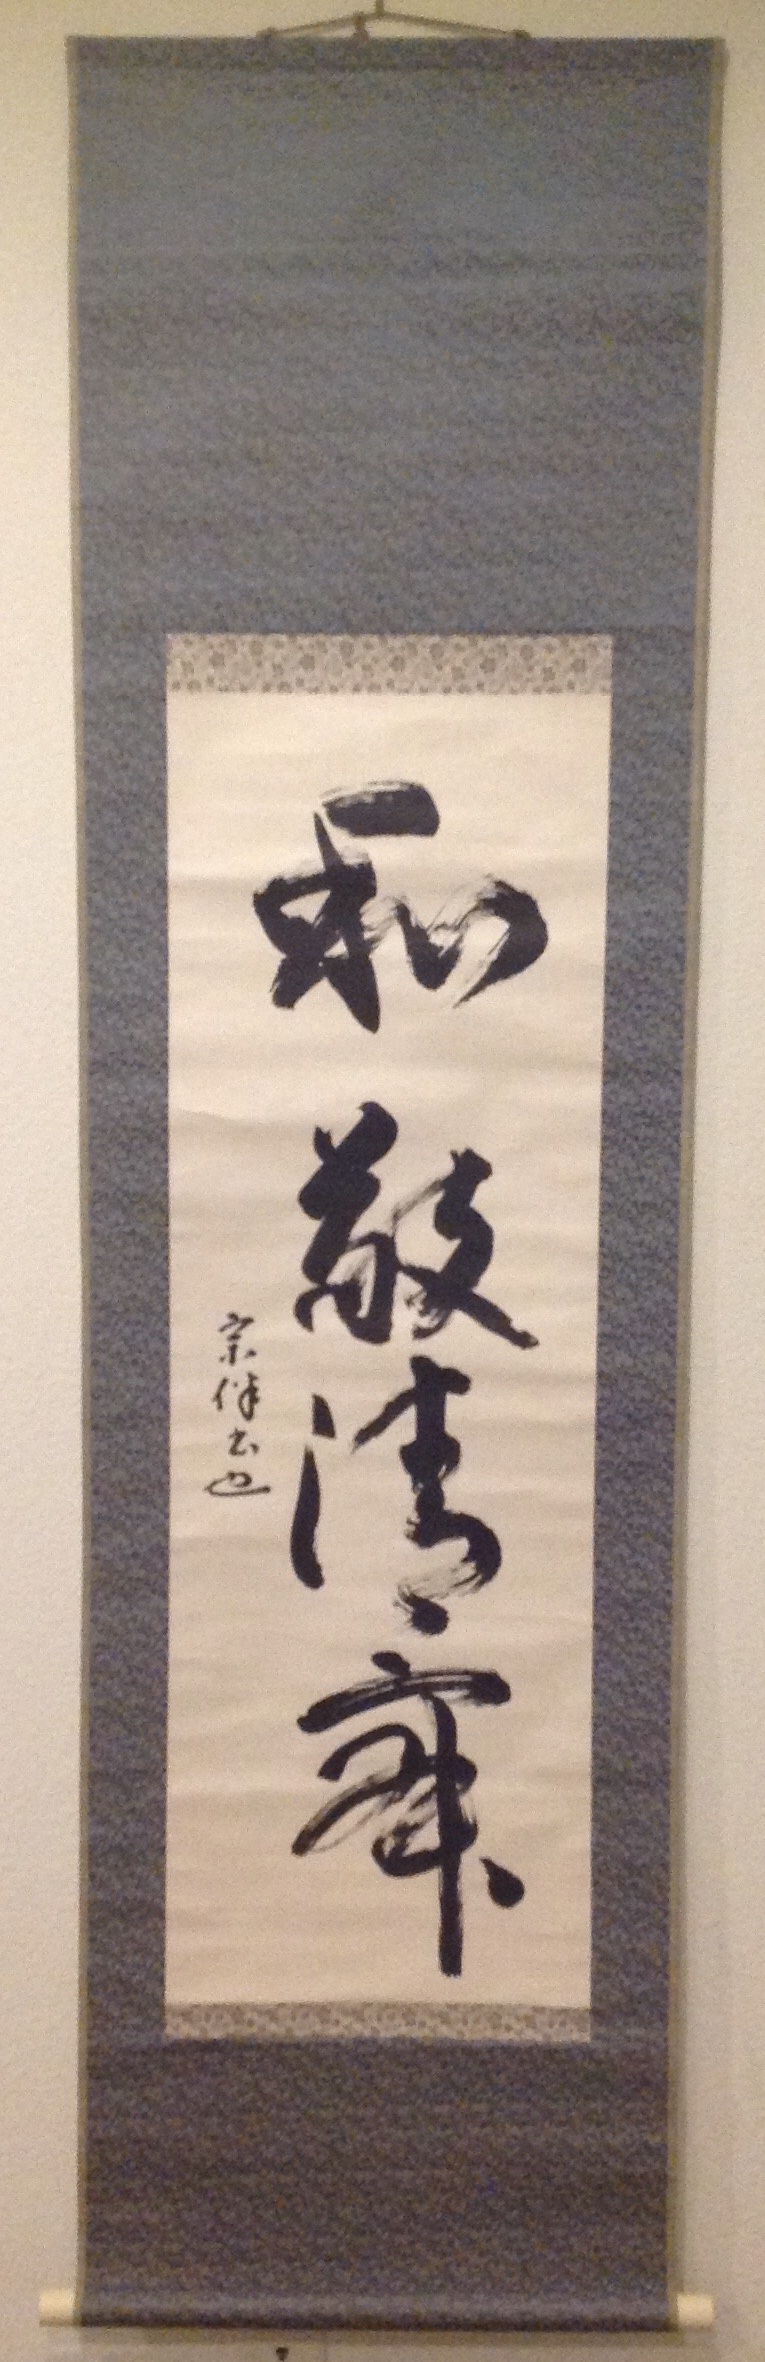 scroll with wa kei sei jaku